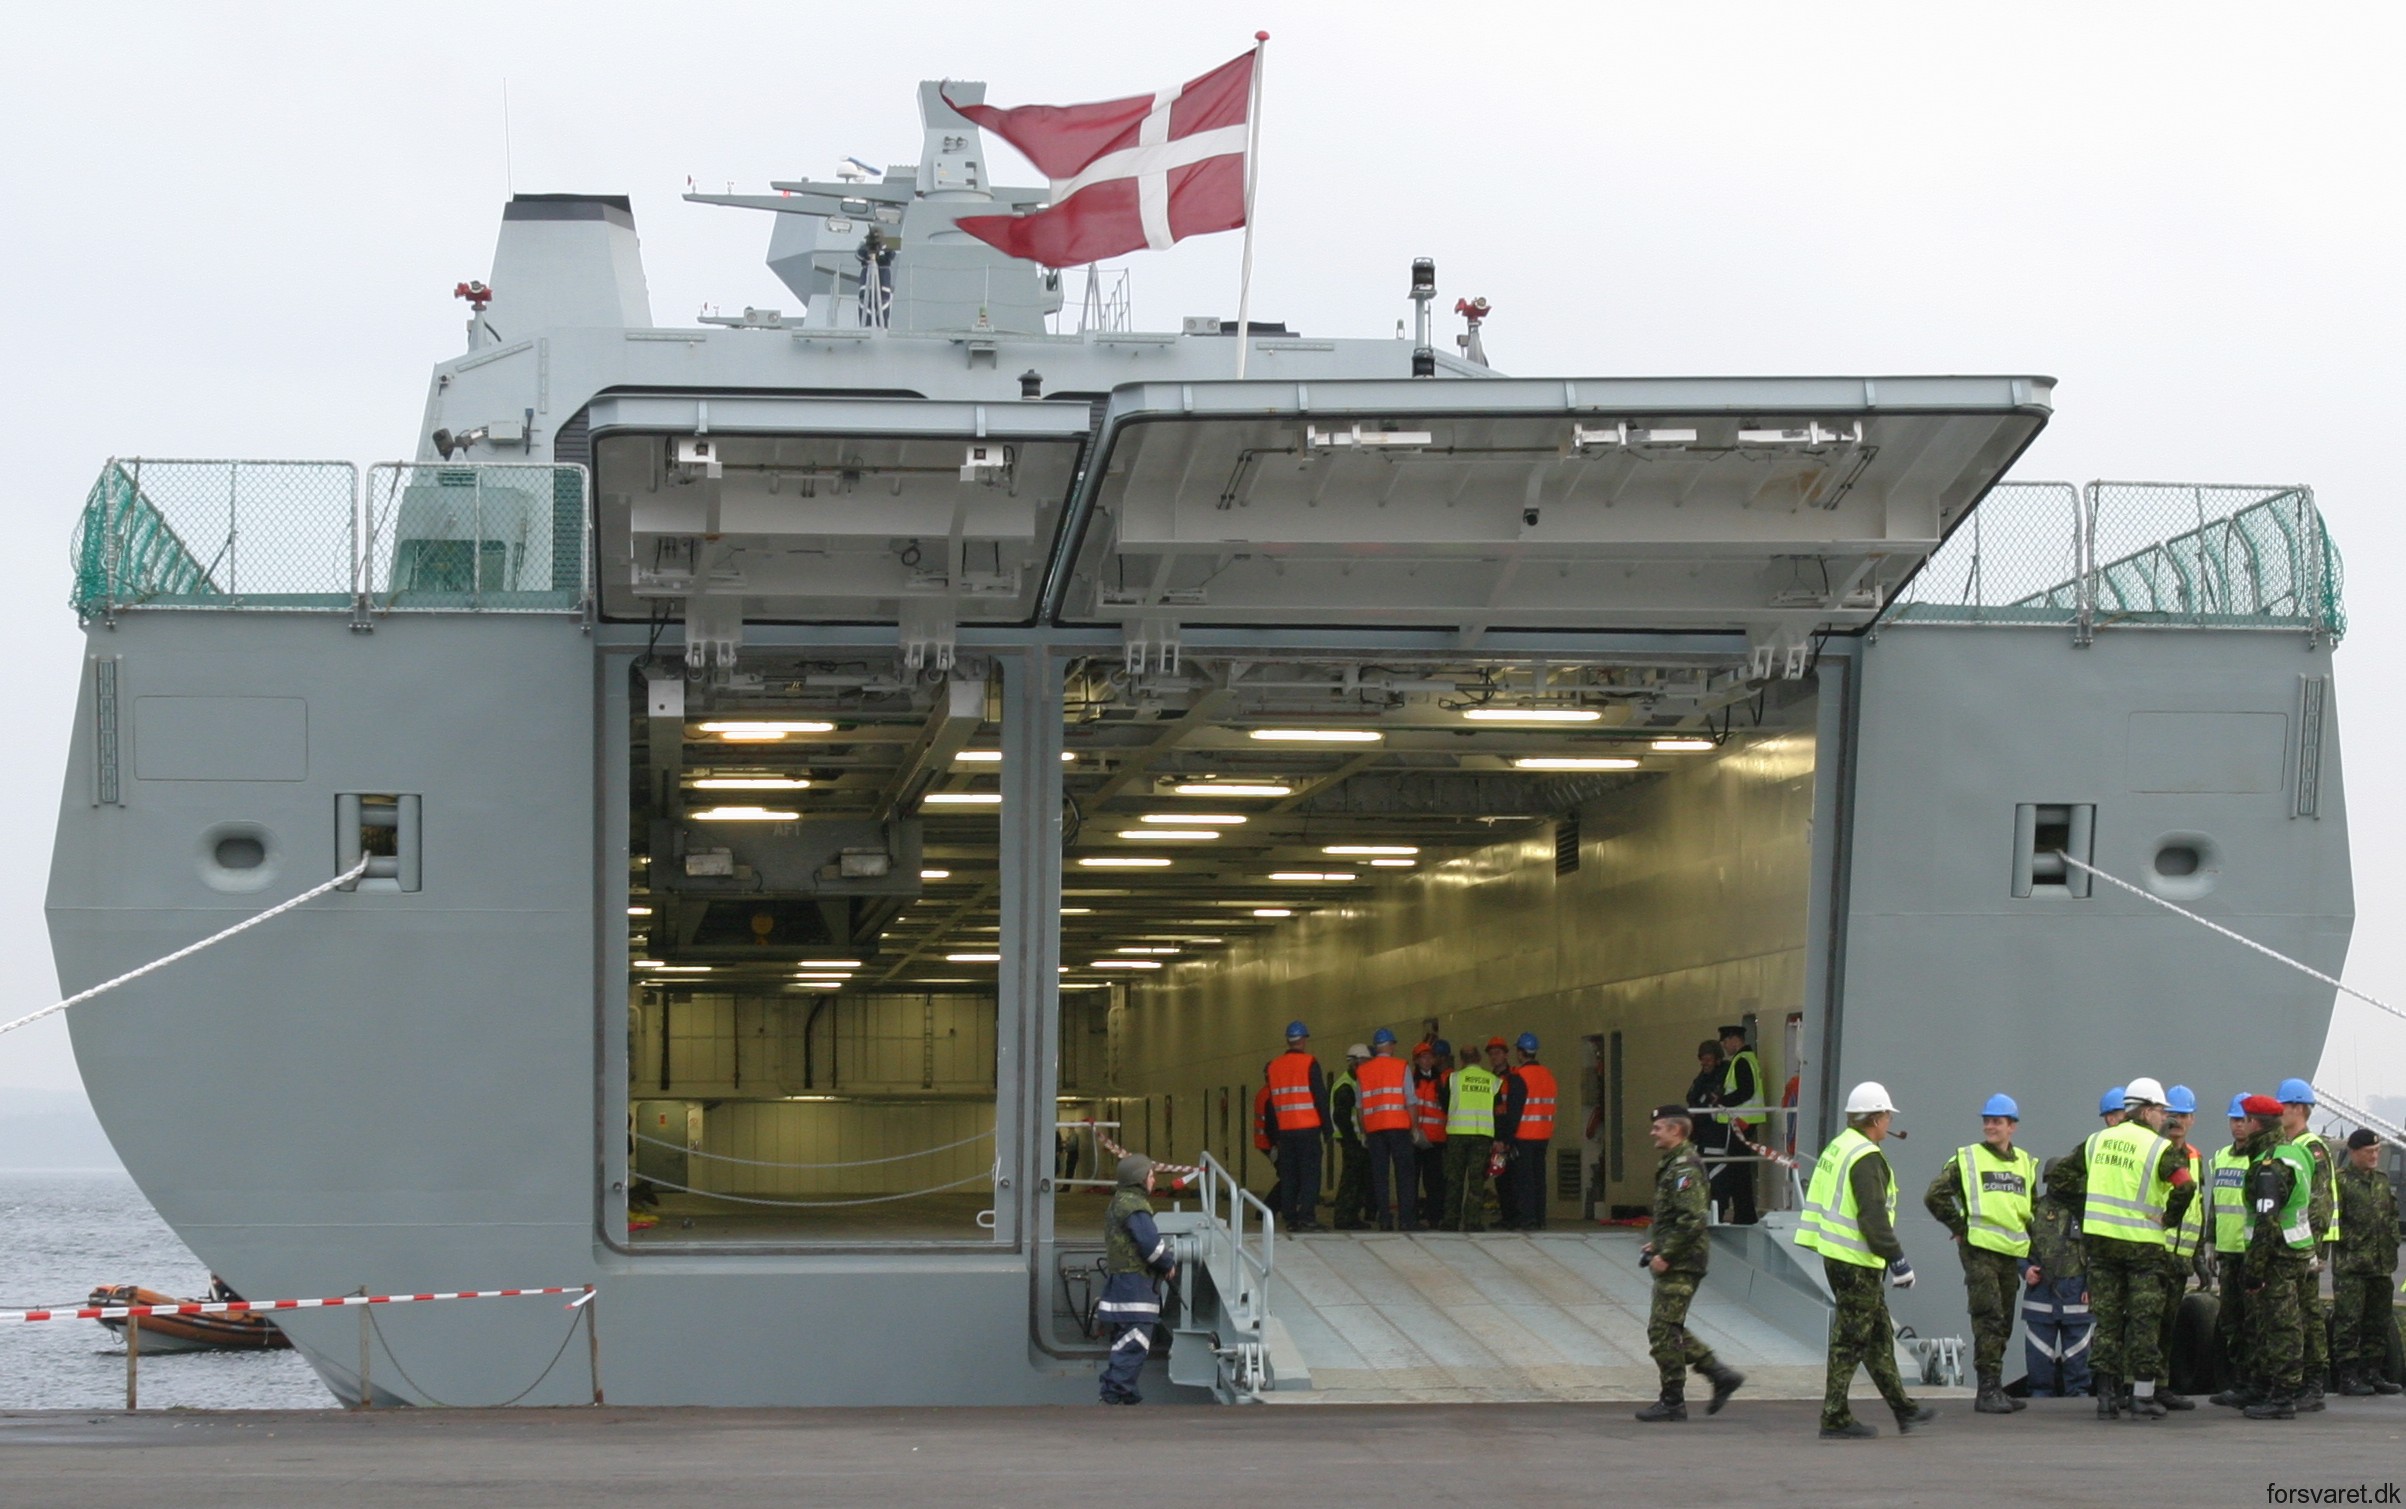 absalon class frigate command support ship royal danish navy 79x flex deck ramp stern gate